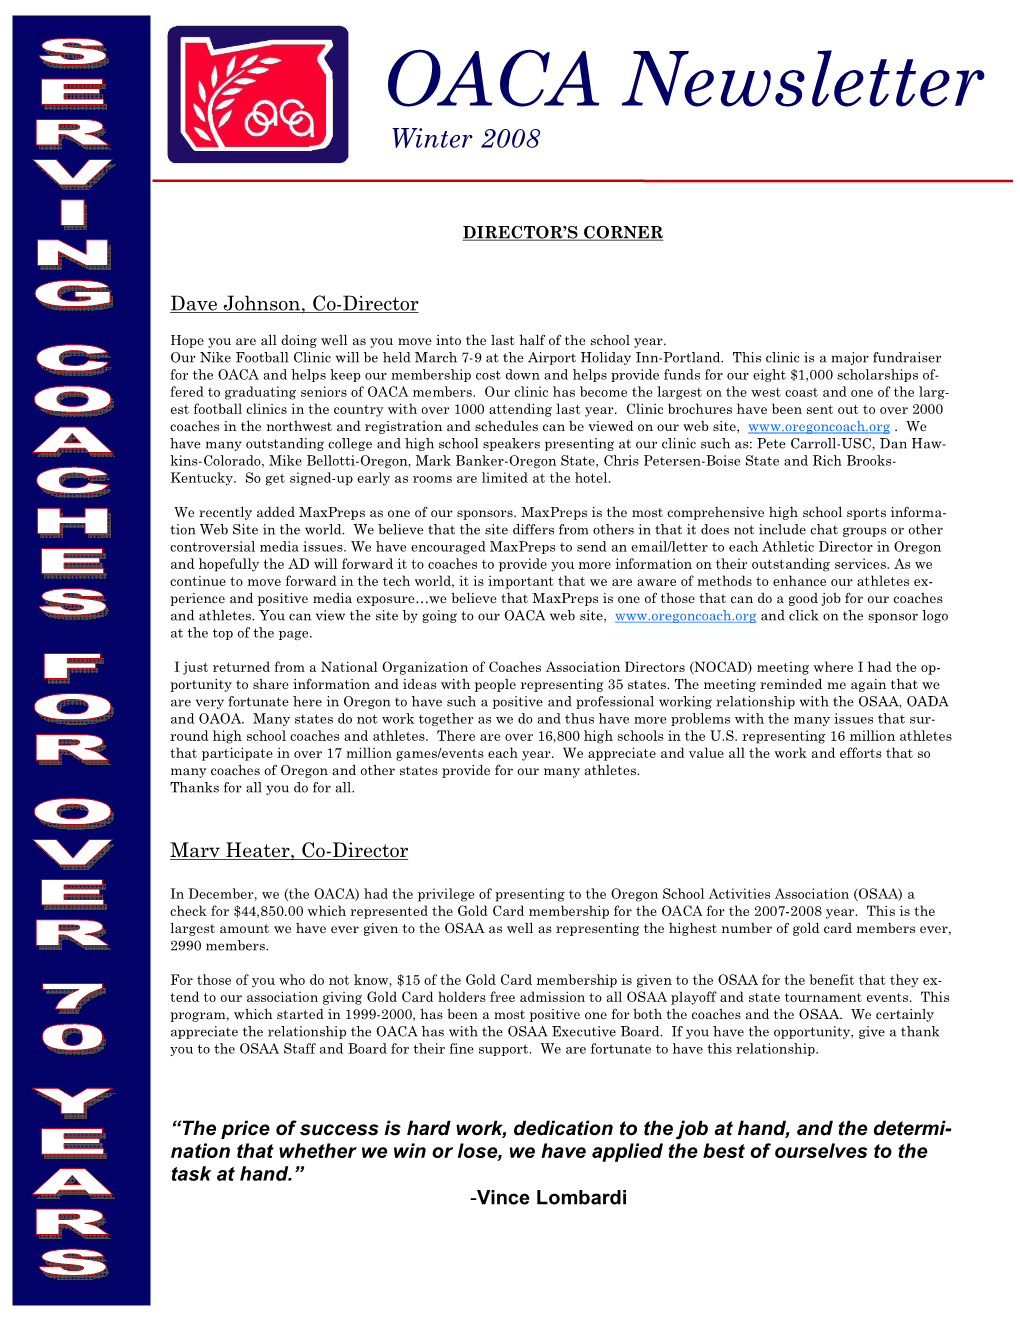 2008 Winter Newsletter